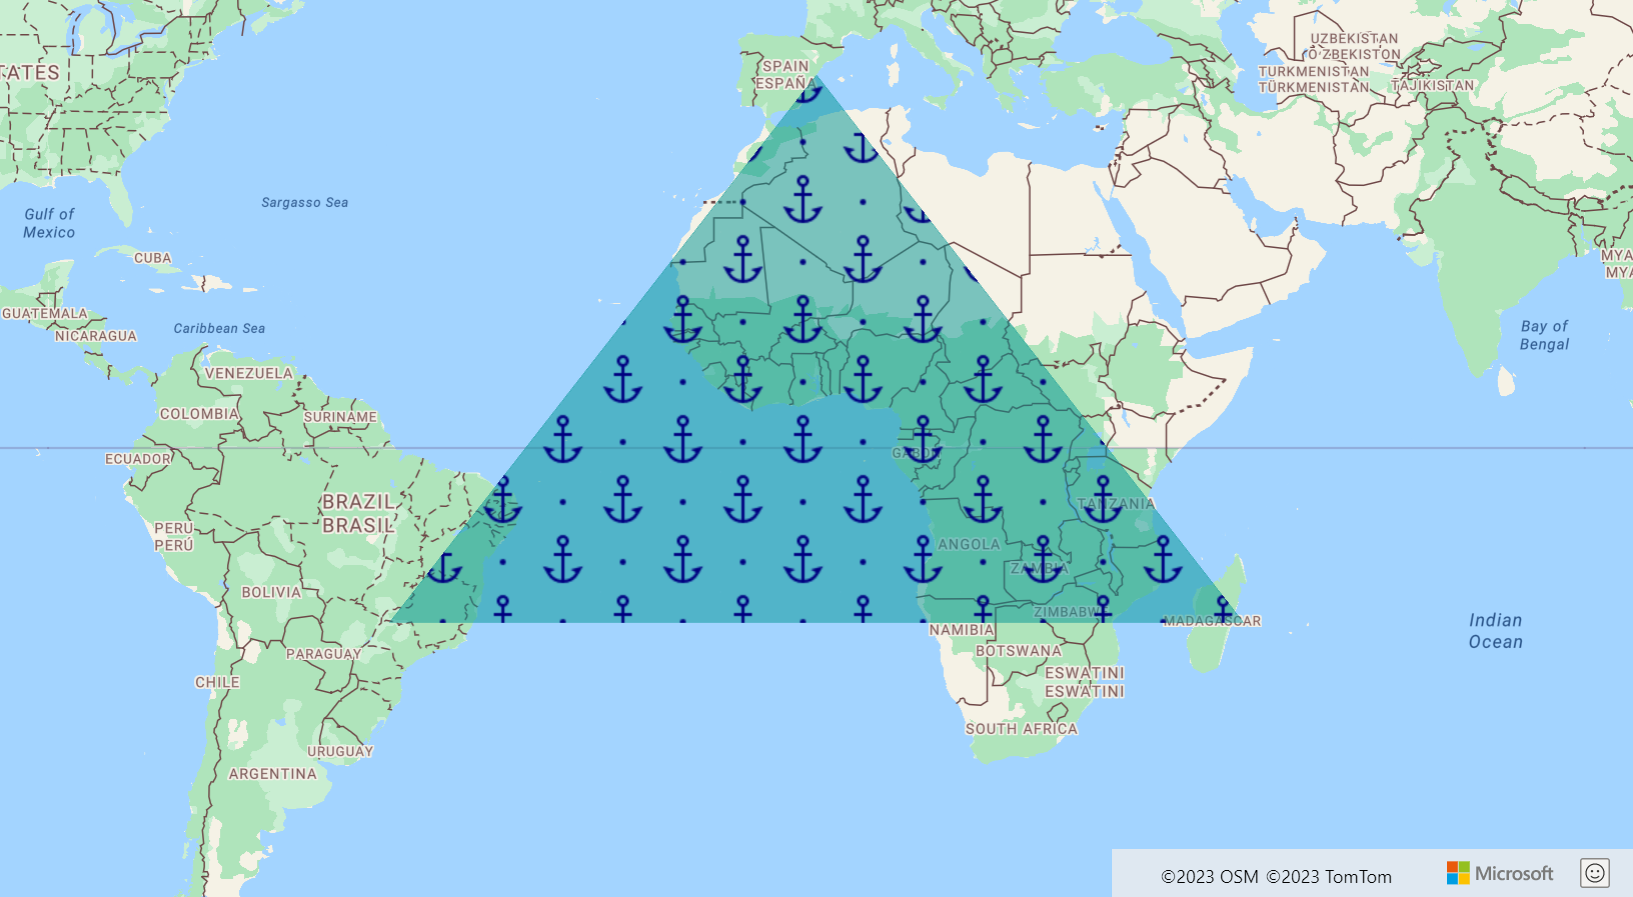 لقطة شاشة تعرض خريطة تعرض طبقة مضلع في شكل مثلث أخضر كبير مع صور متعددة للارتساءات الزرقاء بداخلها.